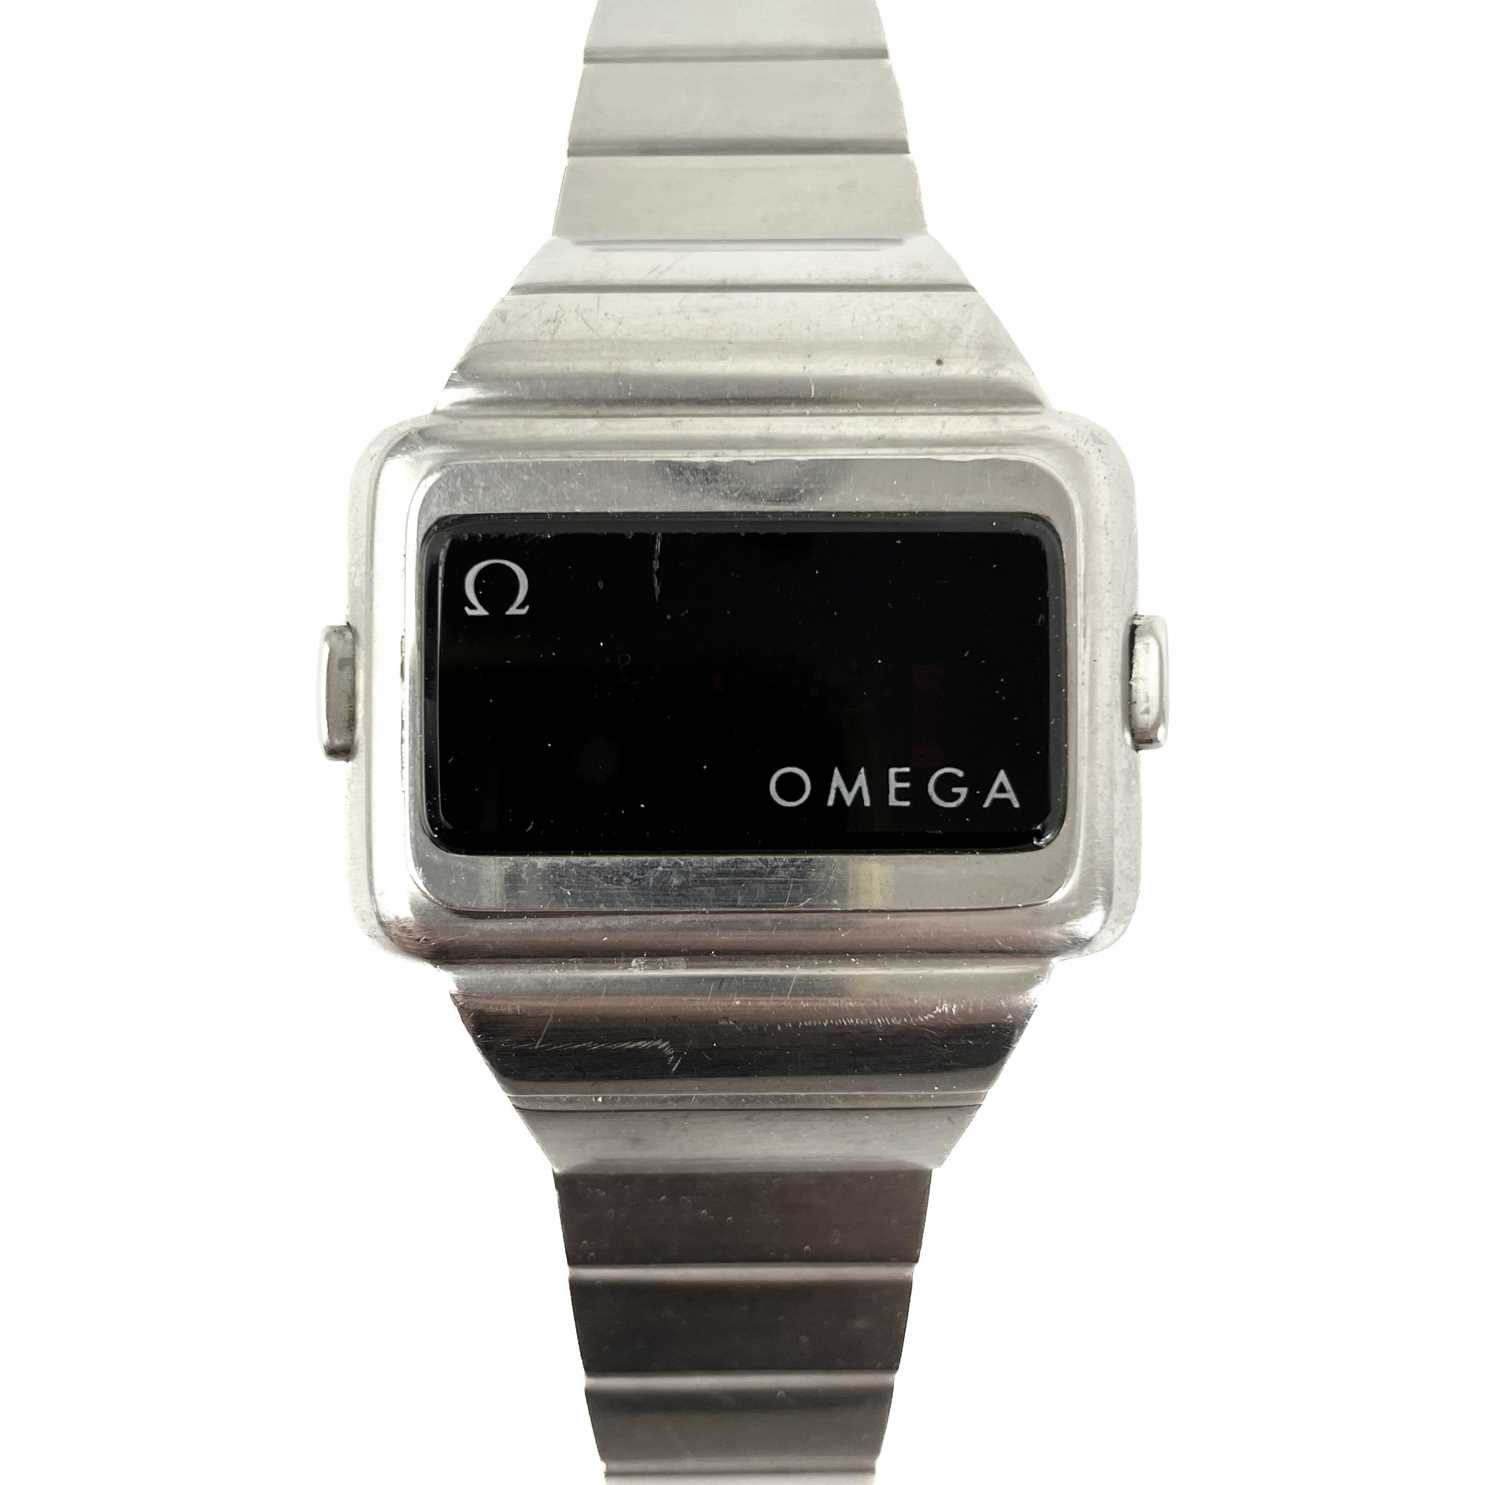 An Omega 'Time Computer' digital quartz gentleman's stainless steel bracelet wristwatch.